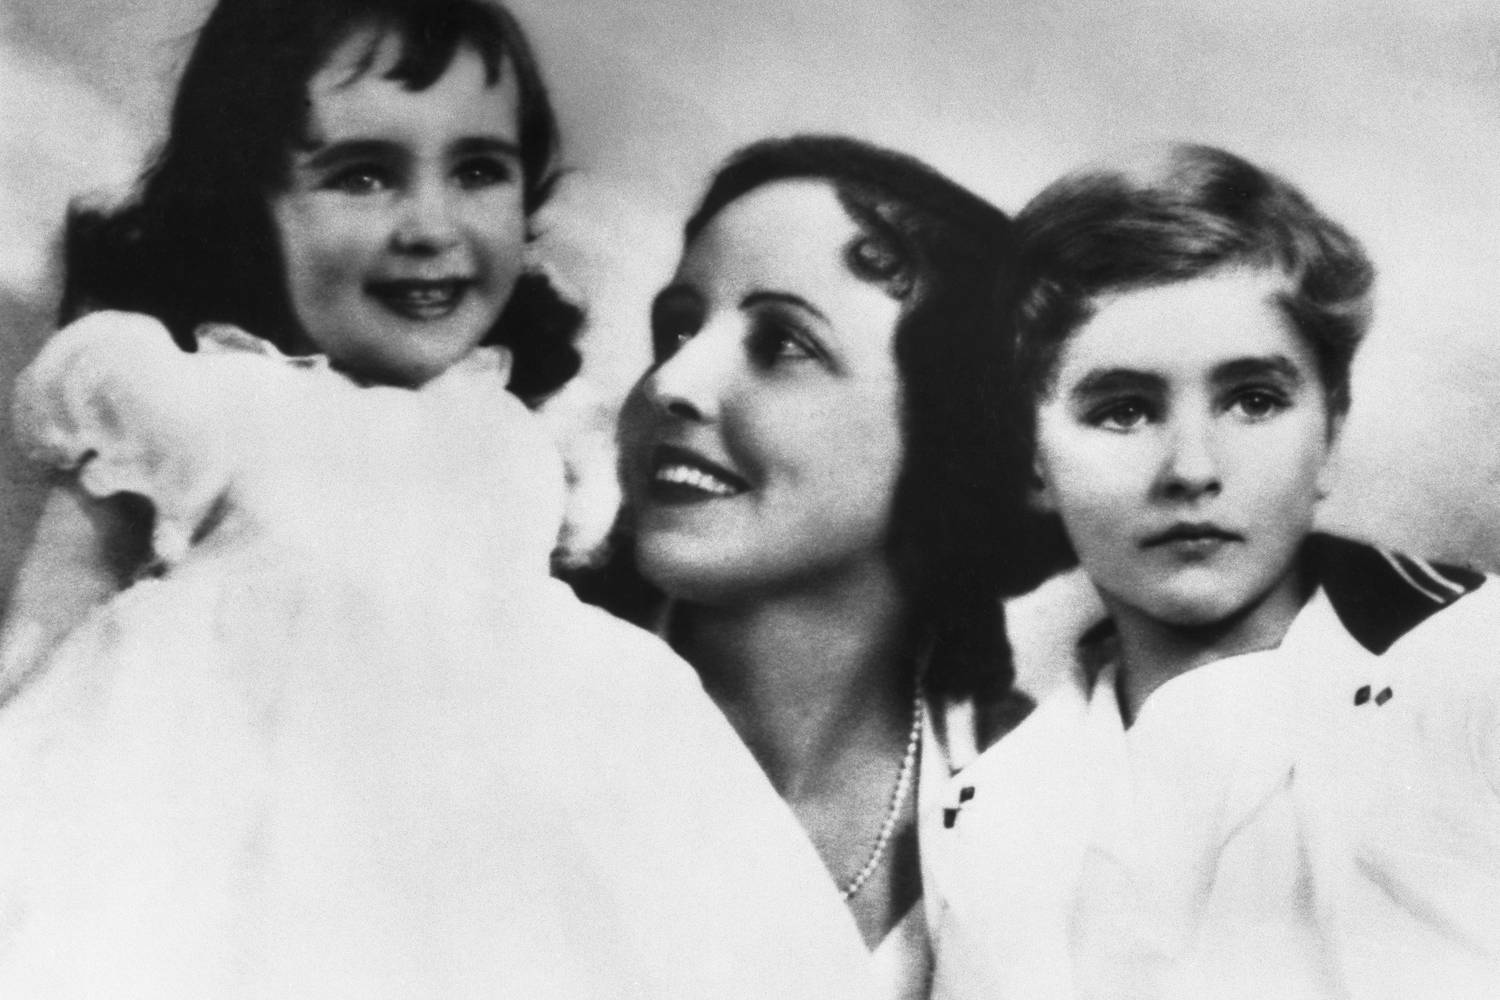 Ez kétéves kislány lett a XX. század egyik legnagyobb mozisztárja. Liz Taylor a képen édesanyjával, Sara Sothern színésznővel és testvérével, Howarddal látható.